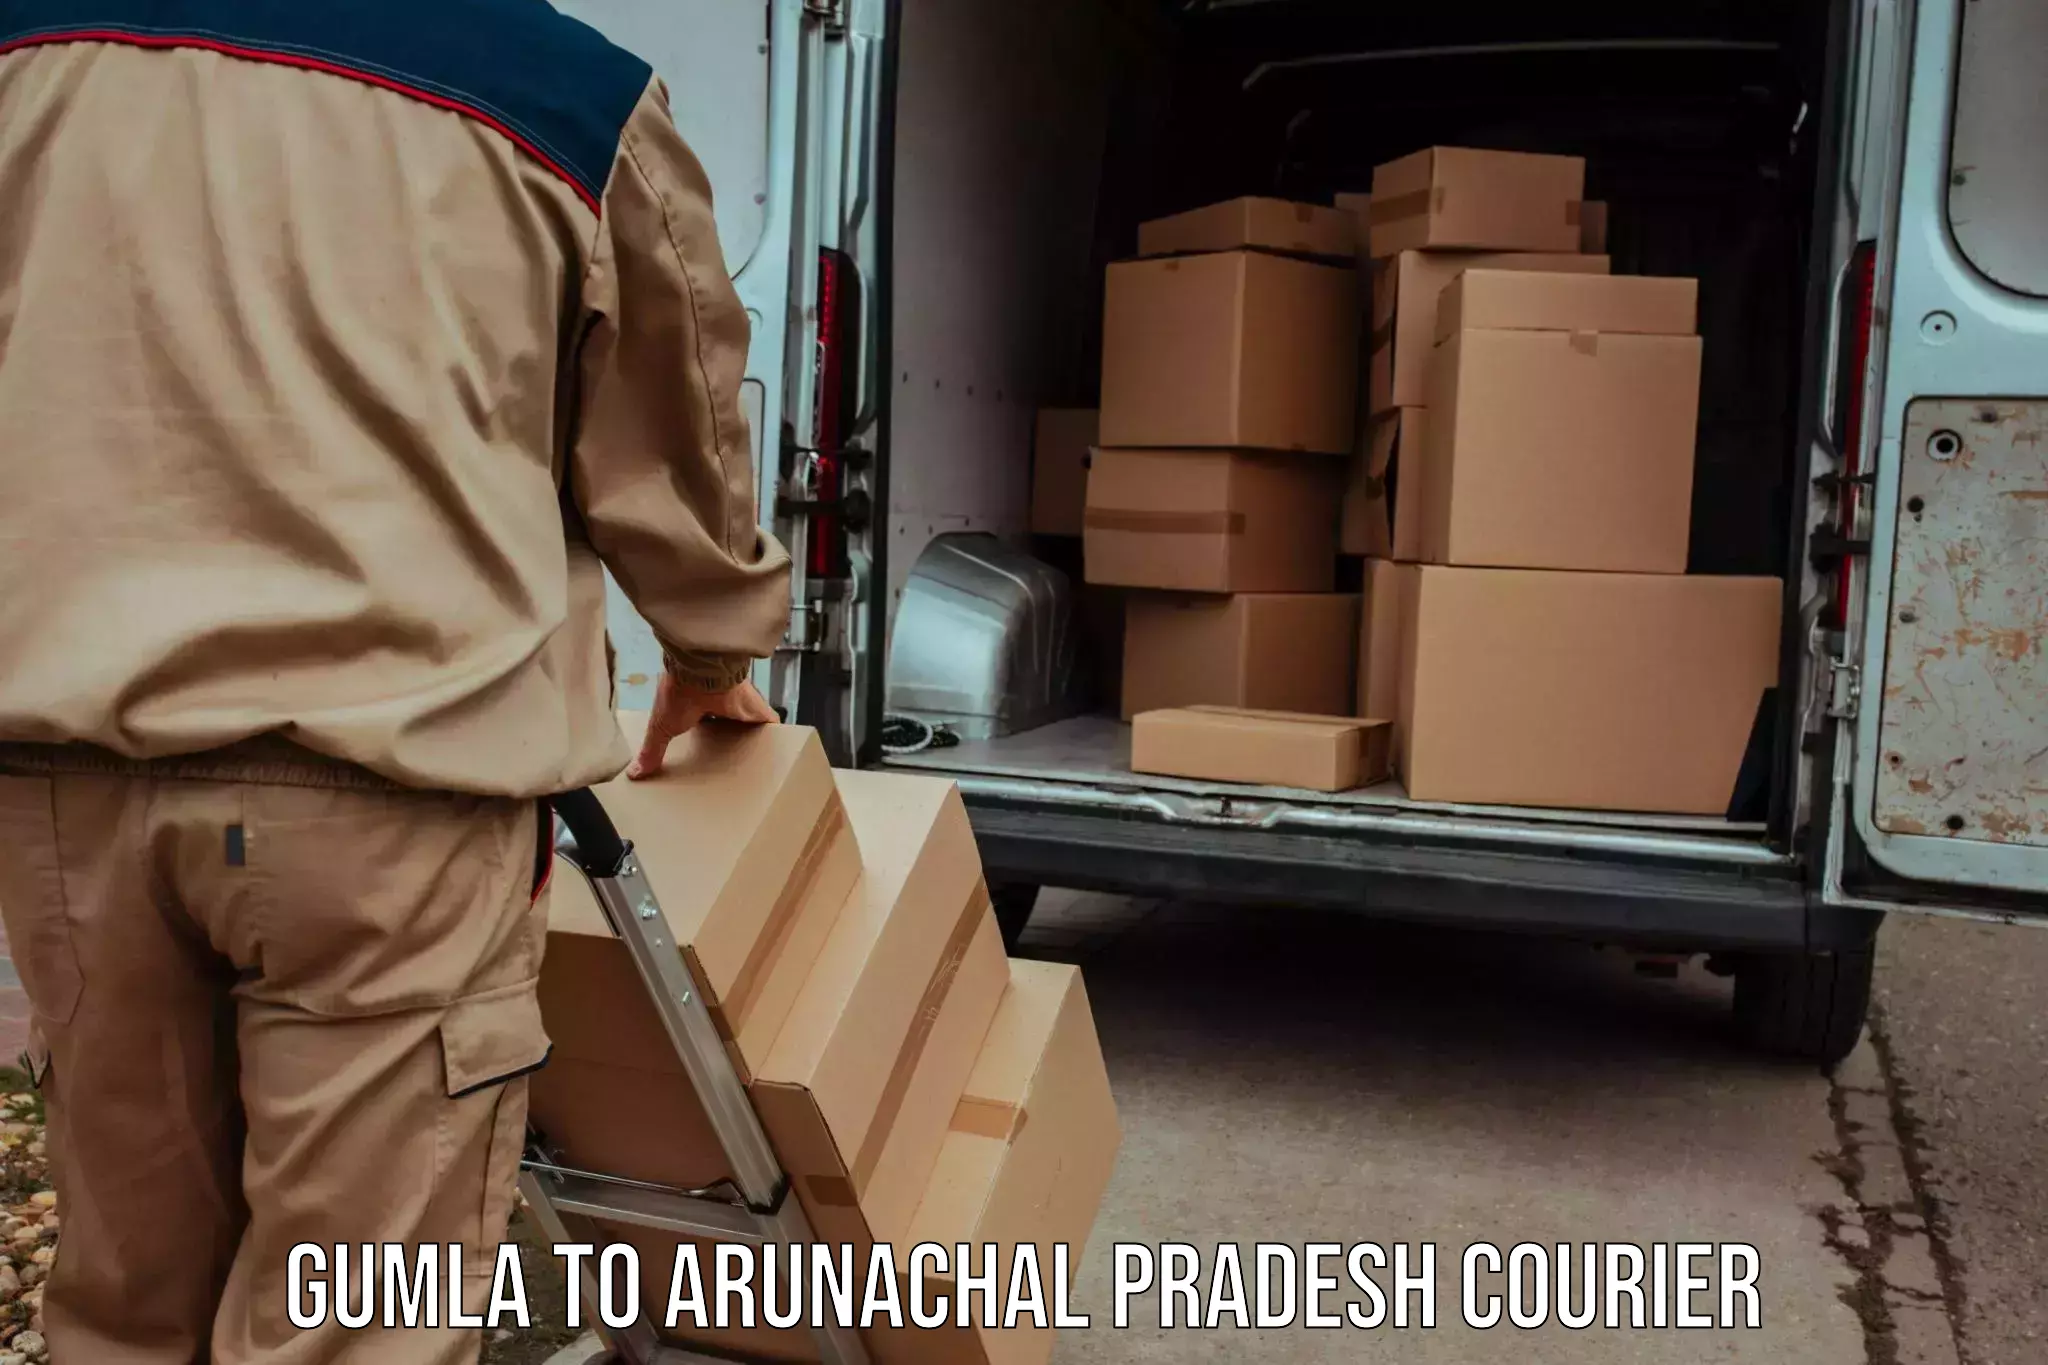 Multi-city courier Gumla to Arunachal Pradesh